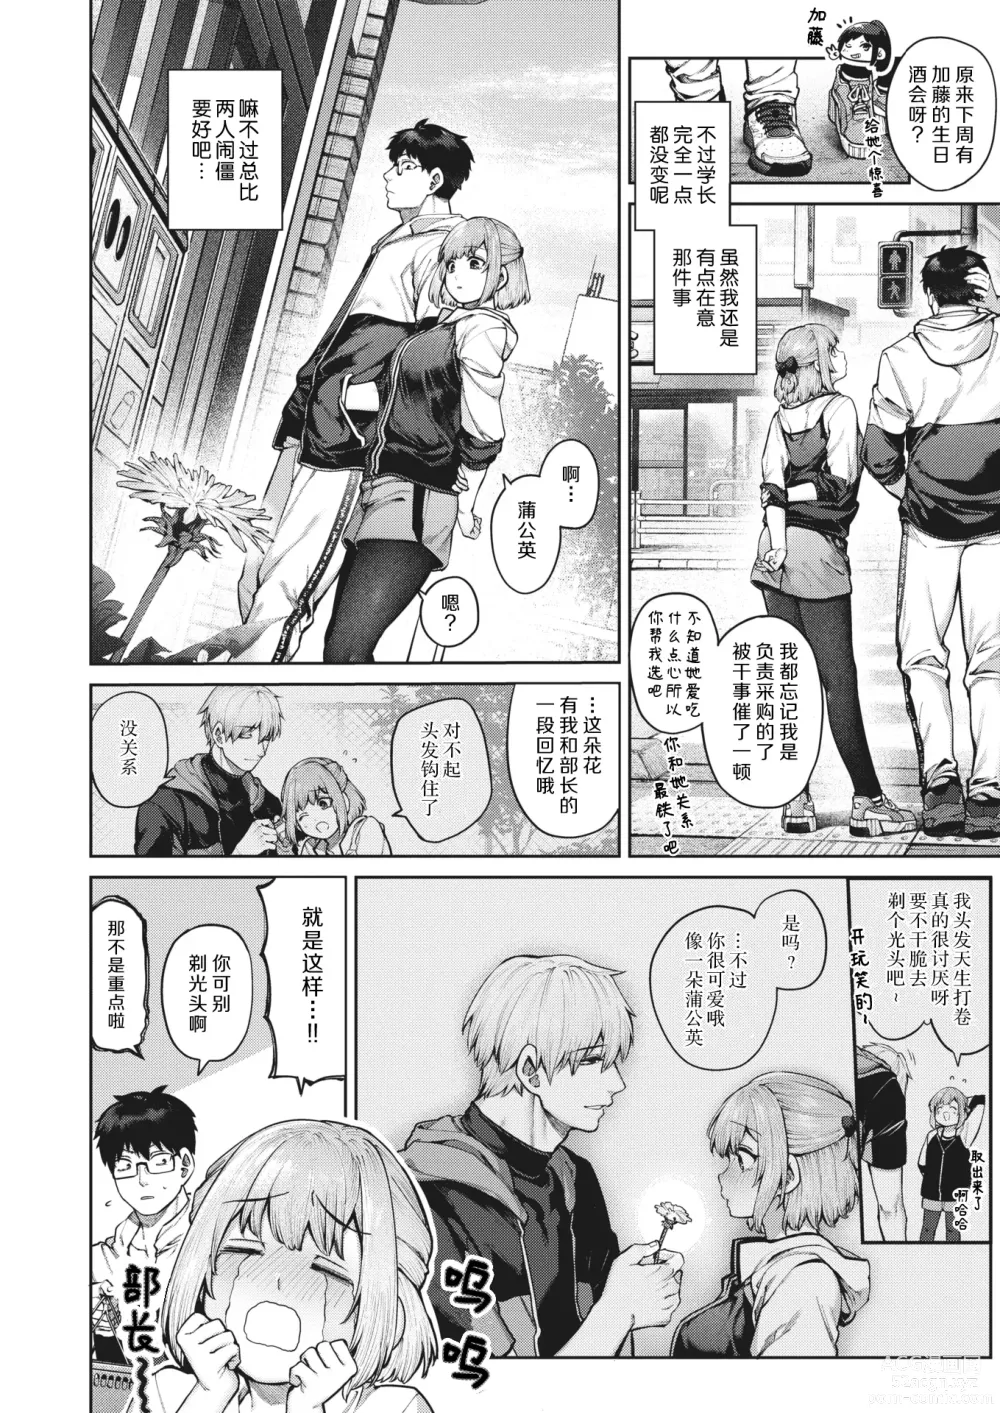 Page 5 of manga 垫脚石之恋